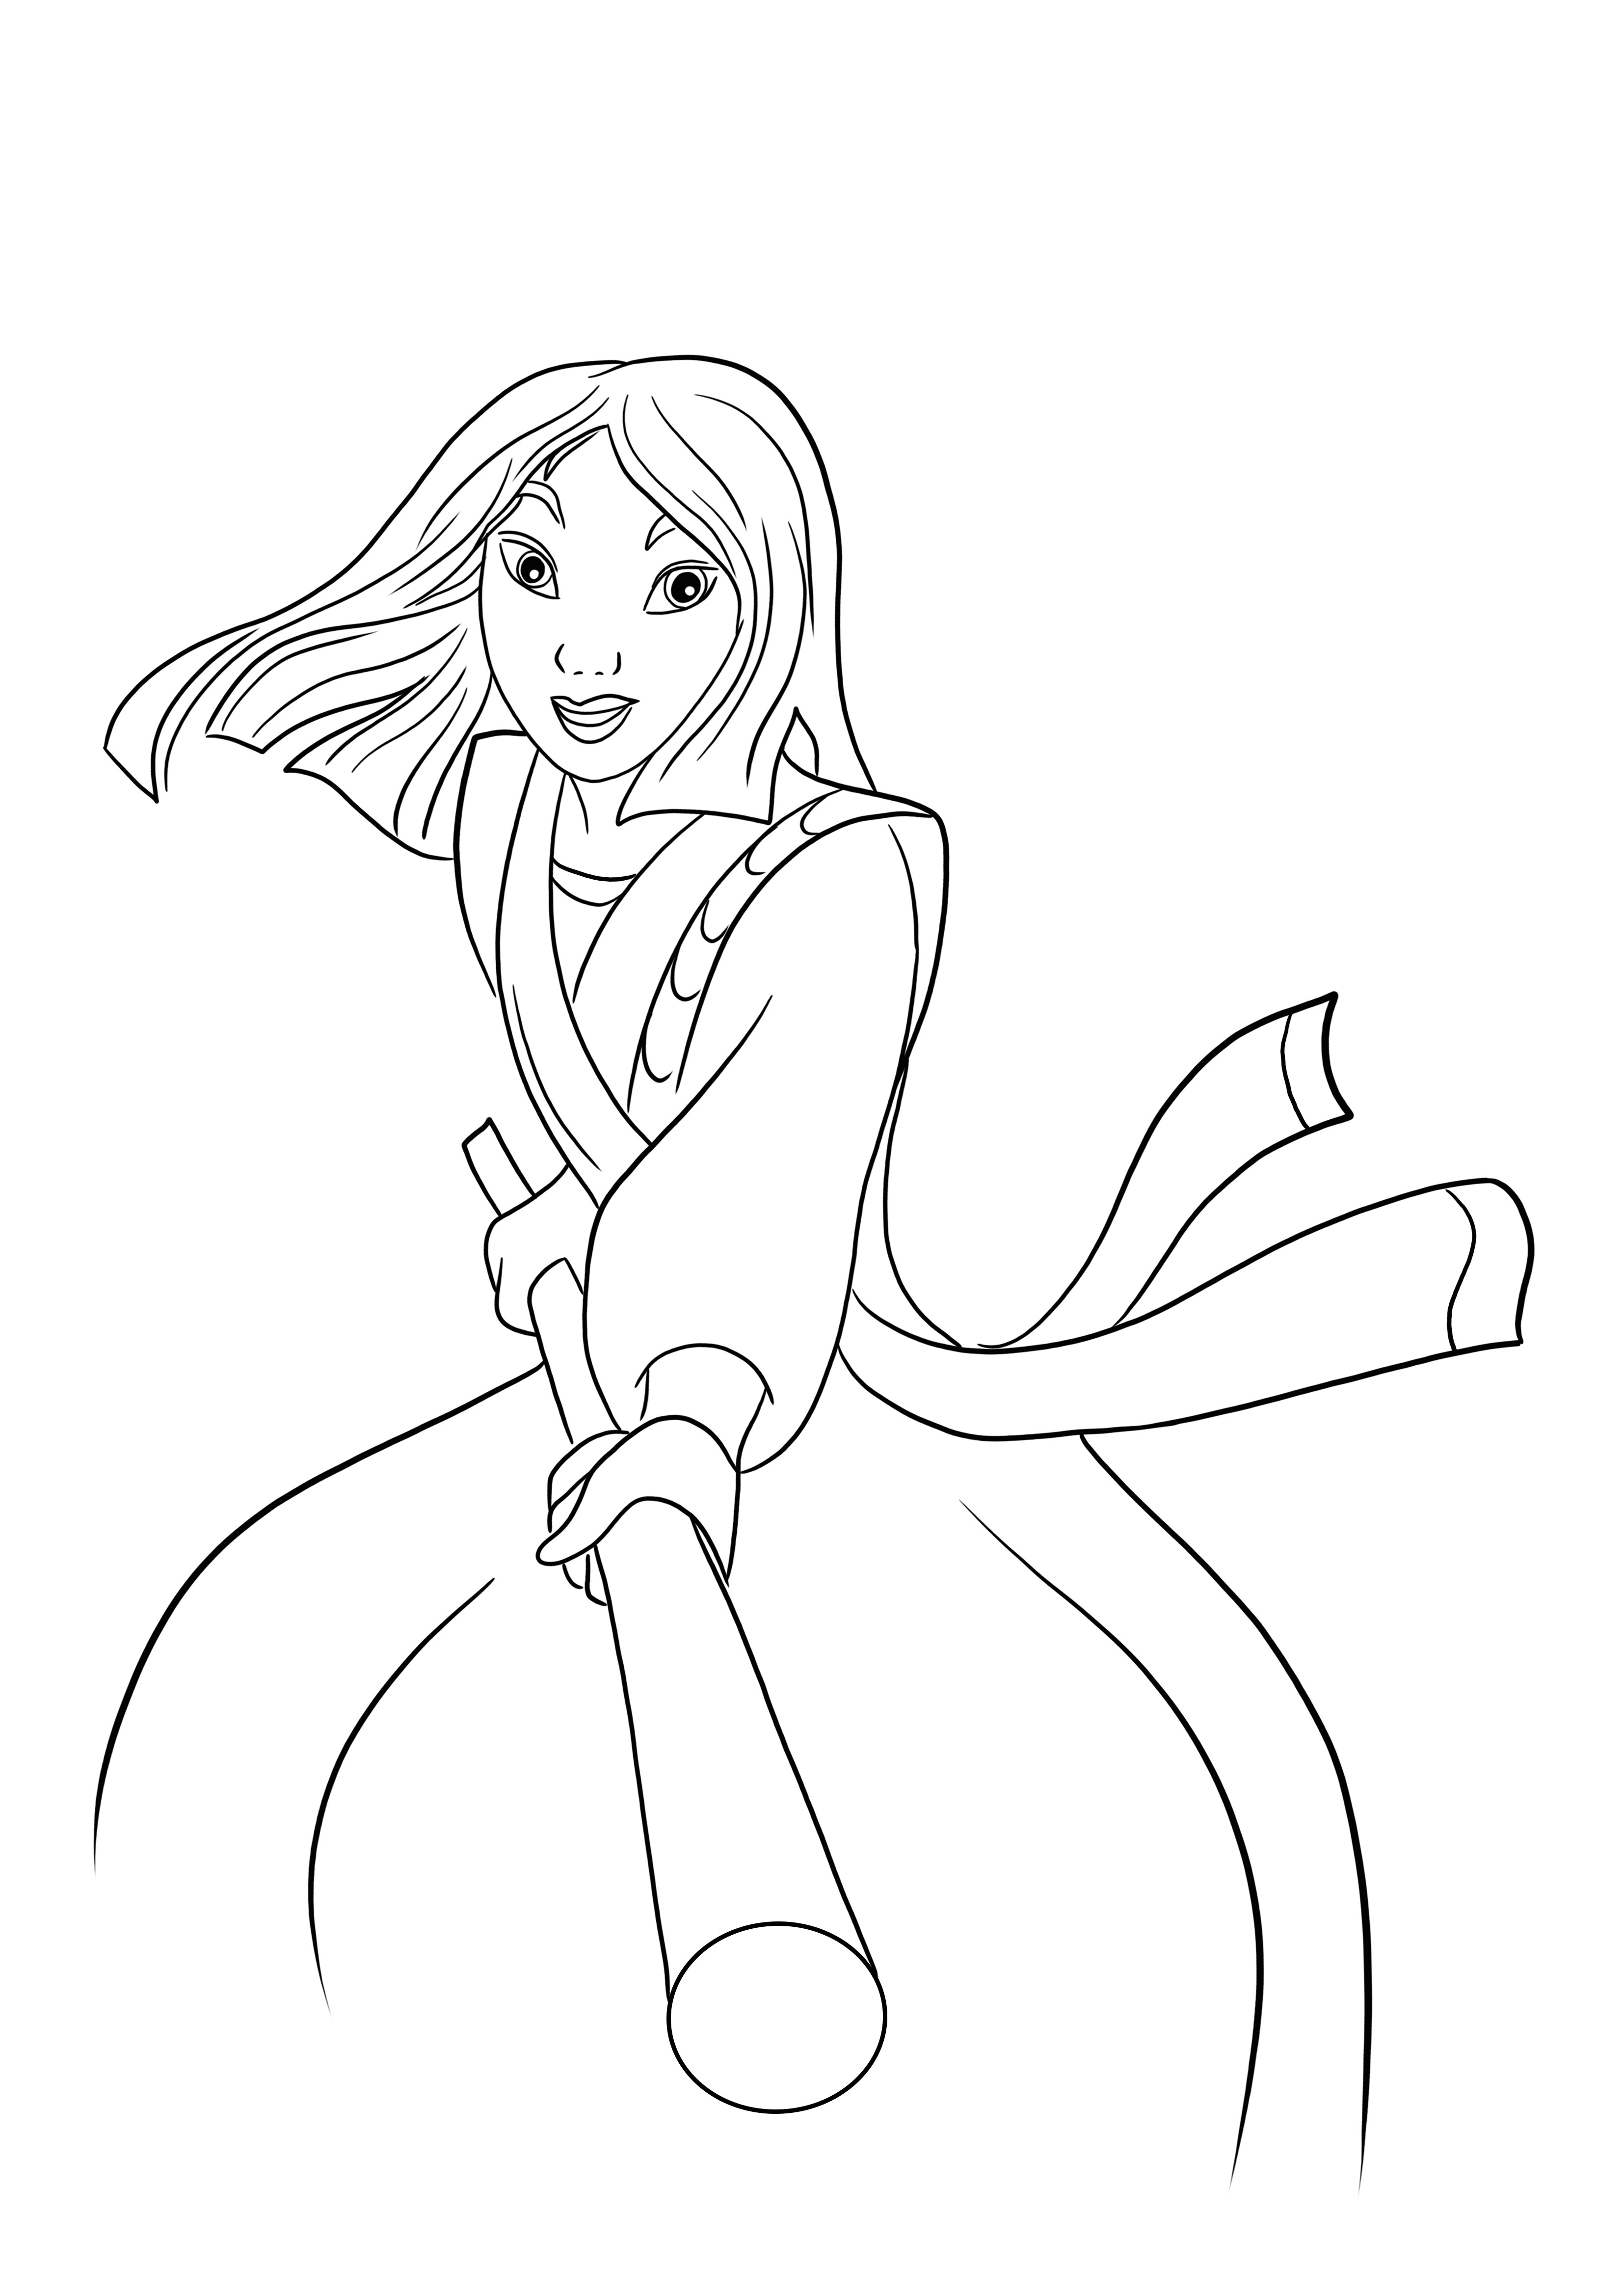 Voici un téléchargement gratuit de l'image de combat de la princesse Mulan à colorier facilement